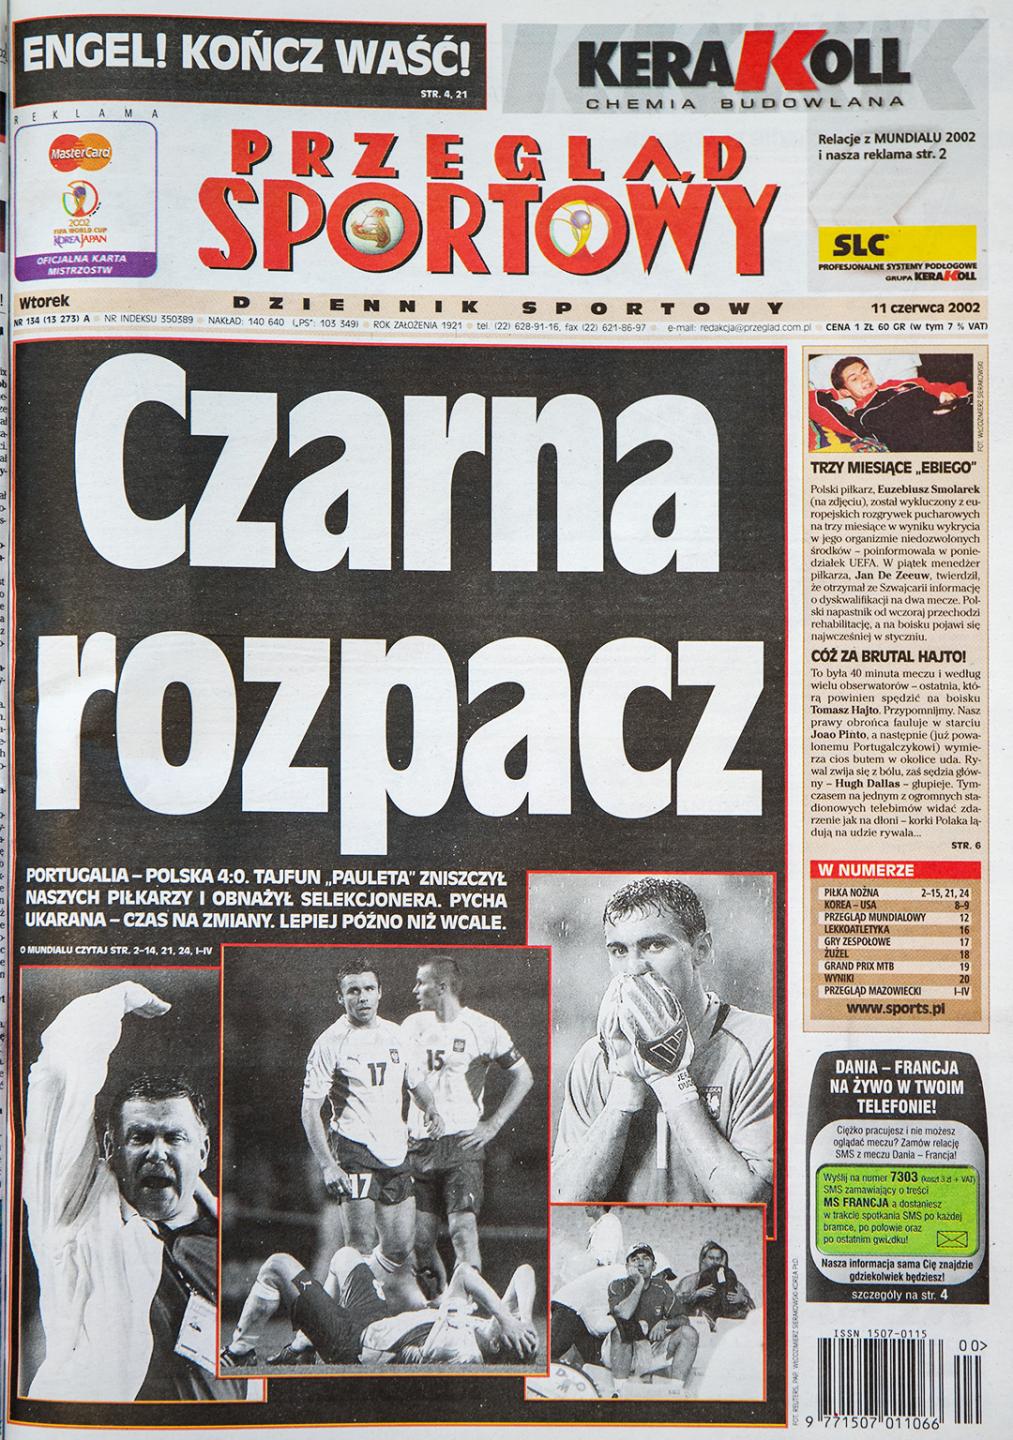 Okładka przeglądu Sportowego po meczu Polska - Portugalia (10 czerwca 2002)